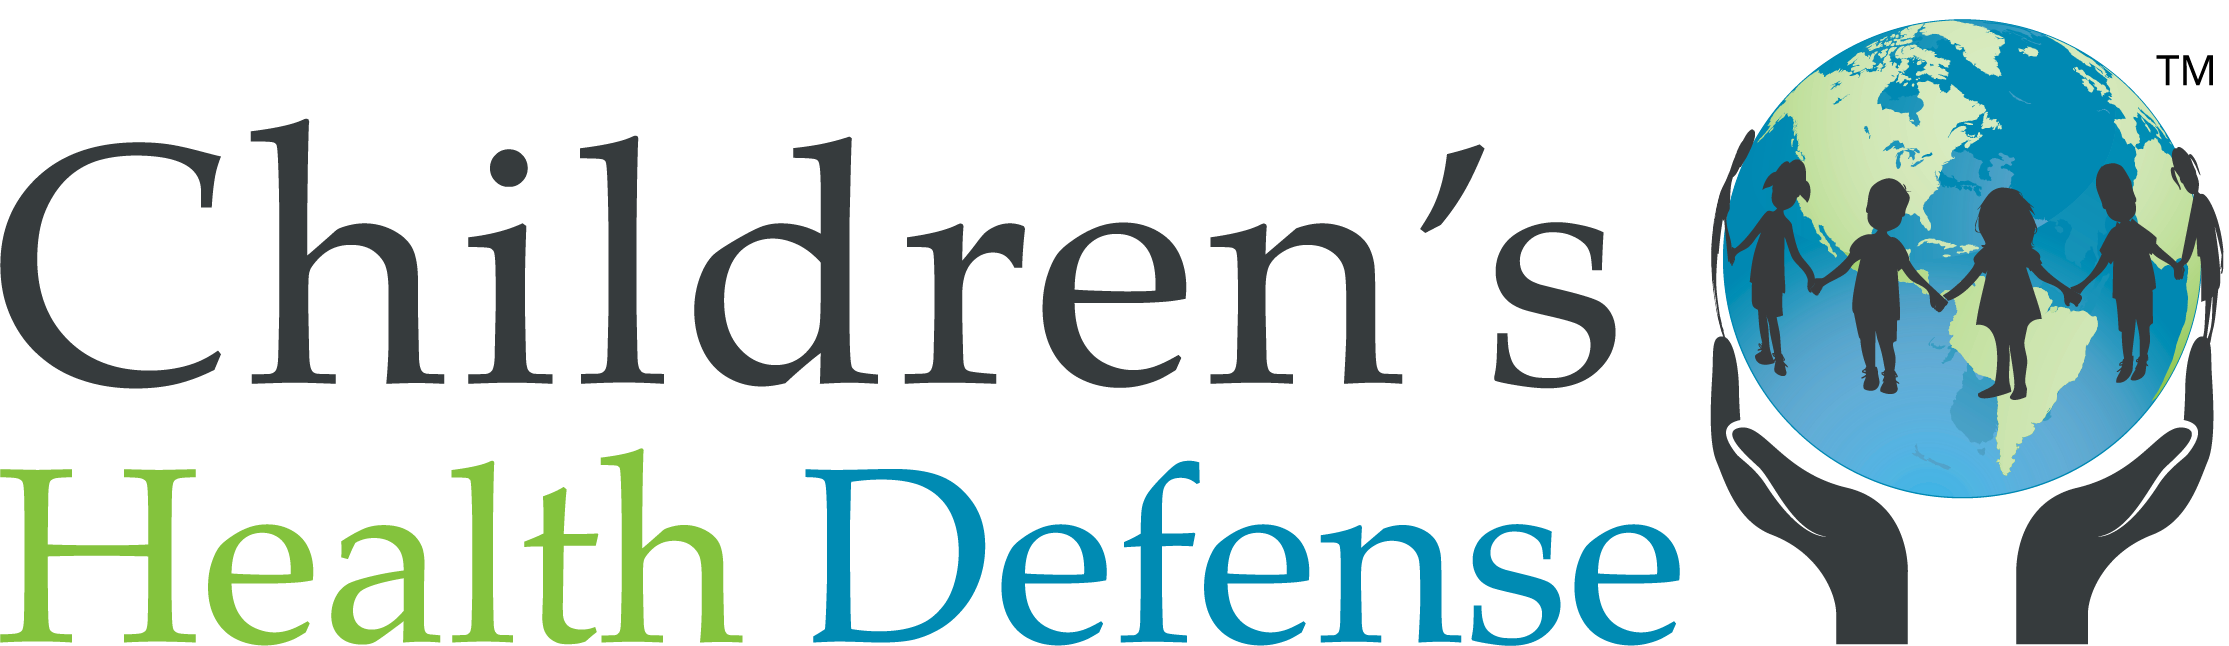 Childrens Health Defense